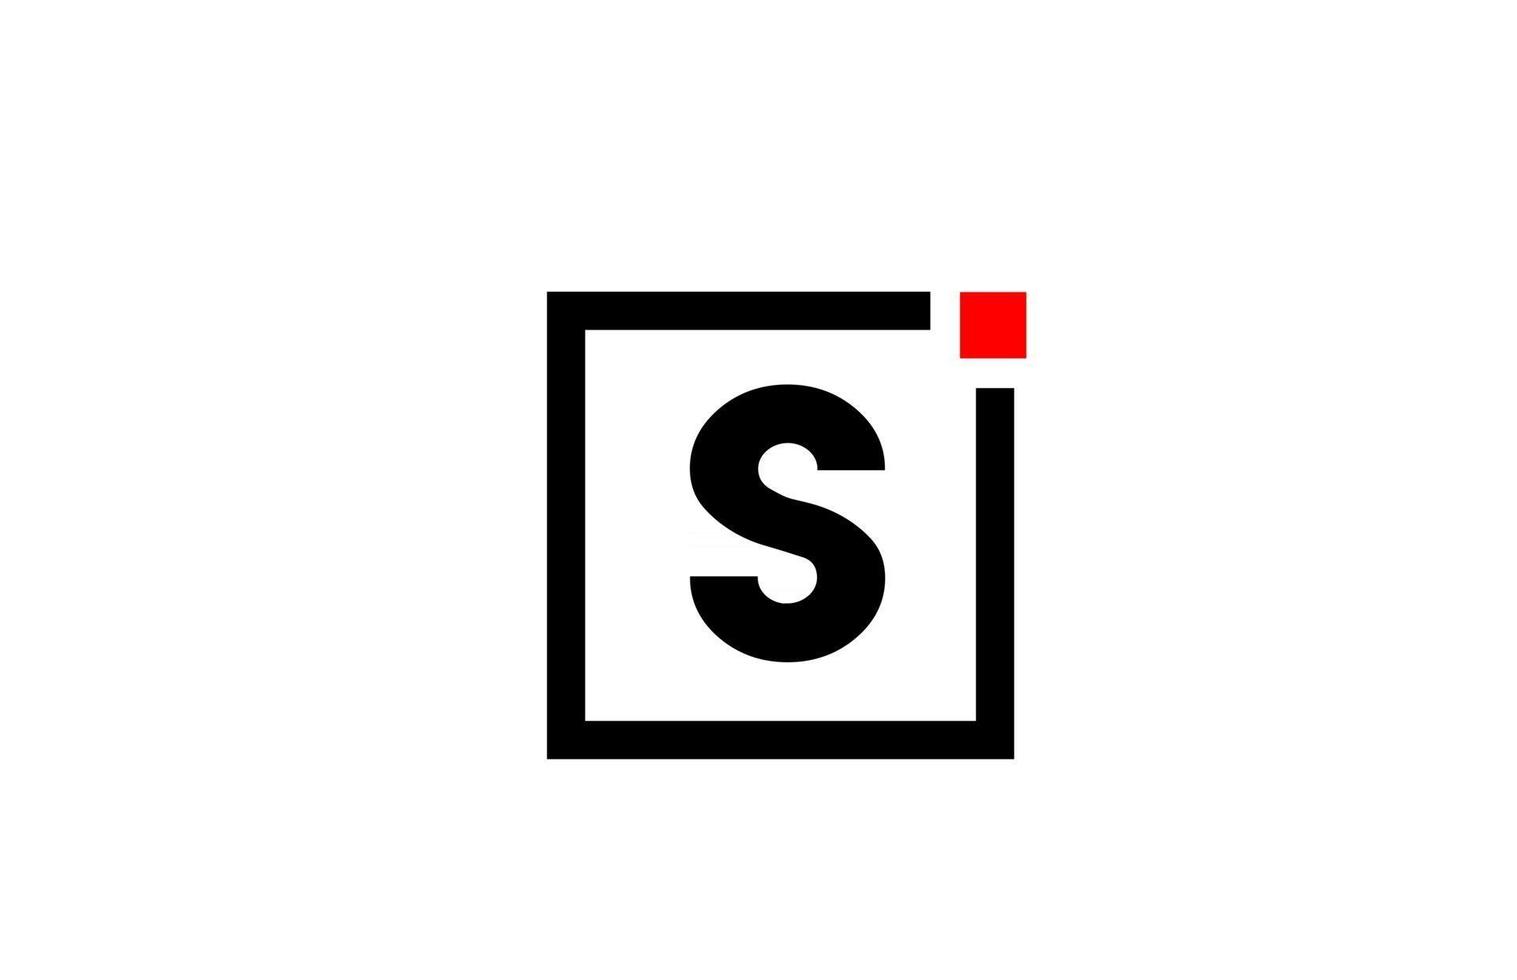 s Alphabet Buchstaben-Logo-Symbol in Schwarz und Weiß. Firmen- und Geschäftsdesign mit Quadrat und rotem Punkt. kreative Corporate-Identity-Vorlage vektor